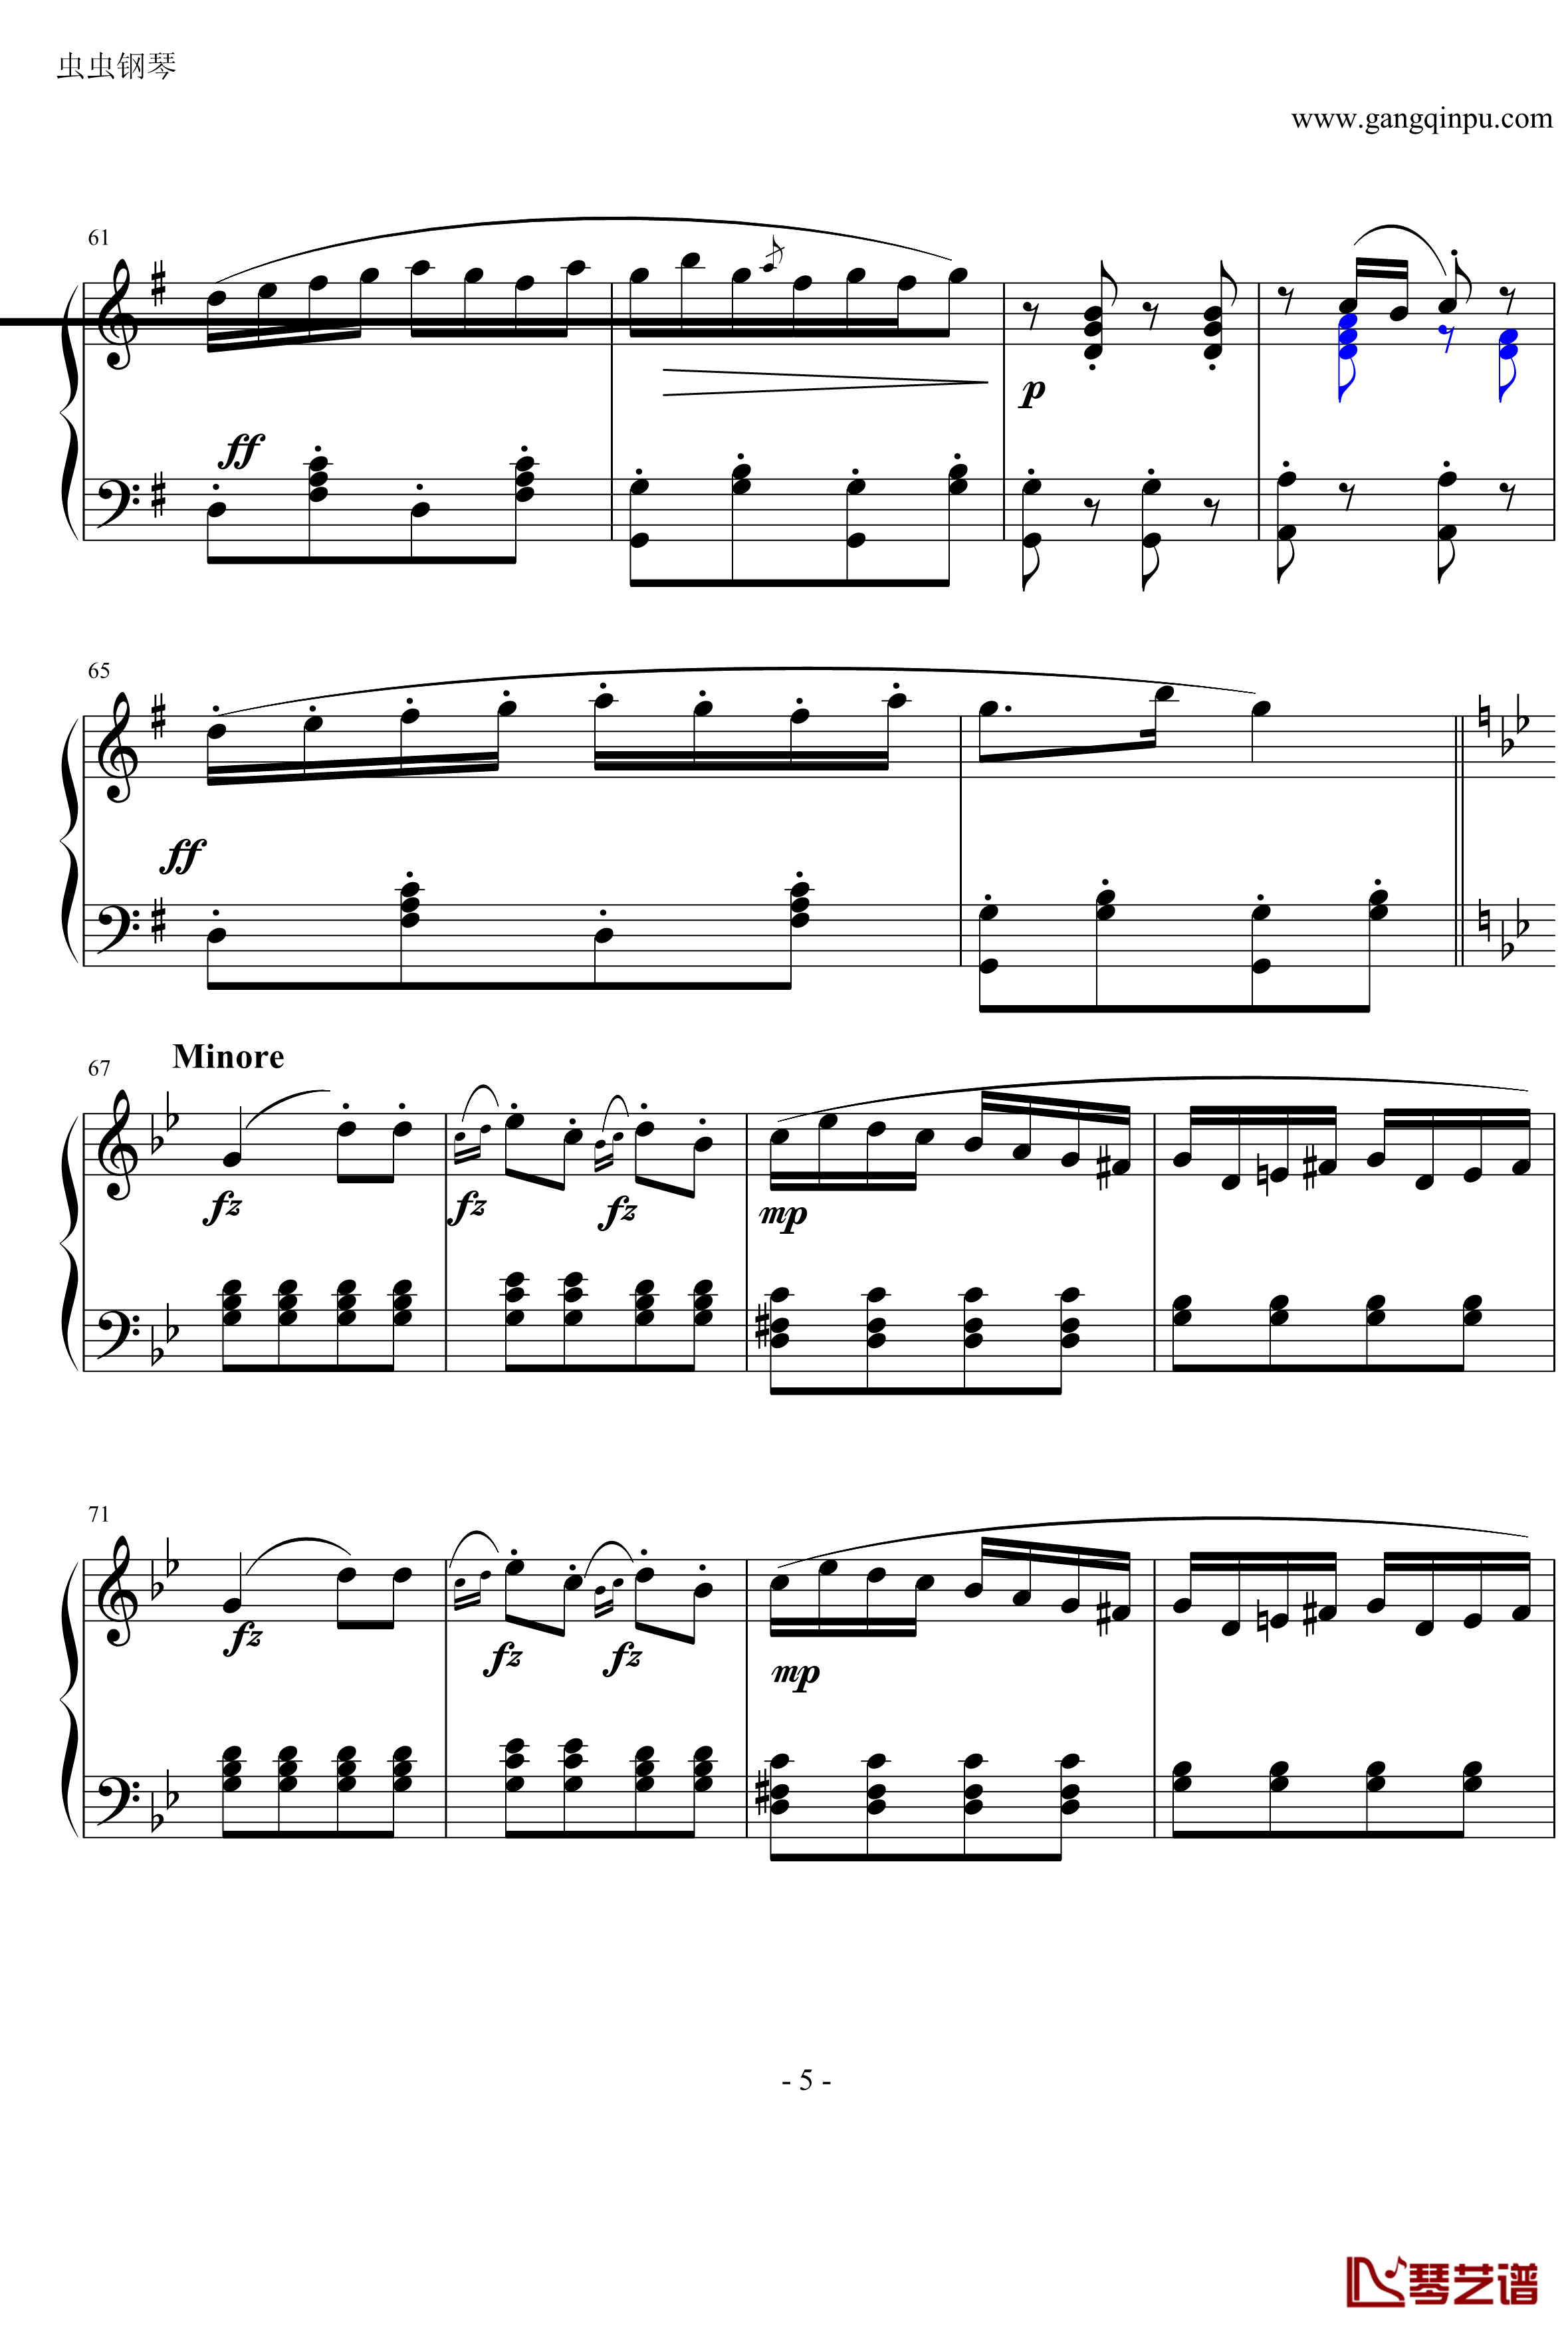 吉普赛回旋曲钢琴谱-海顿5